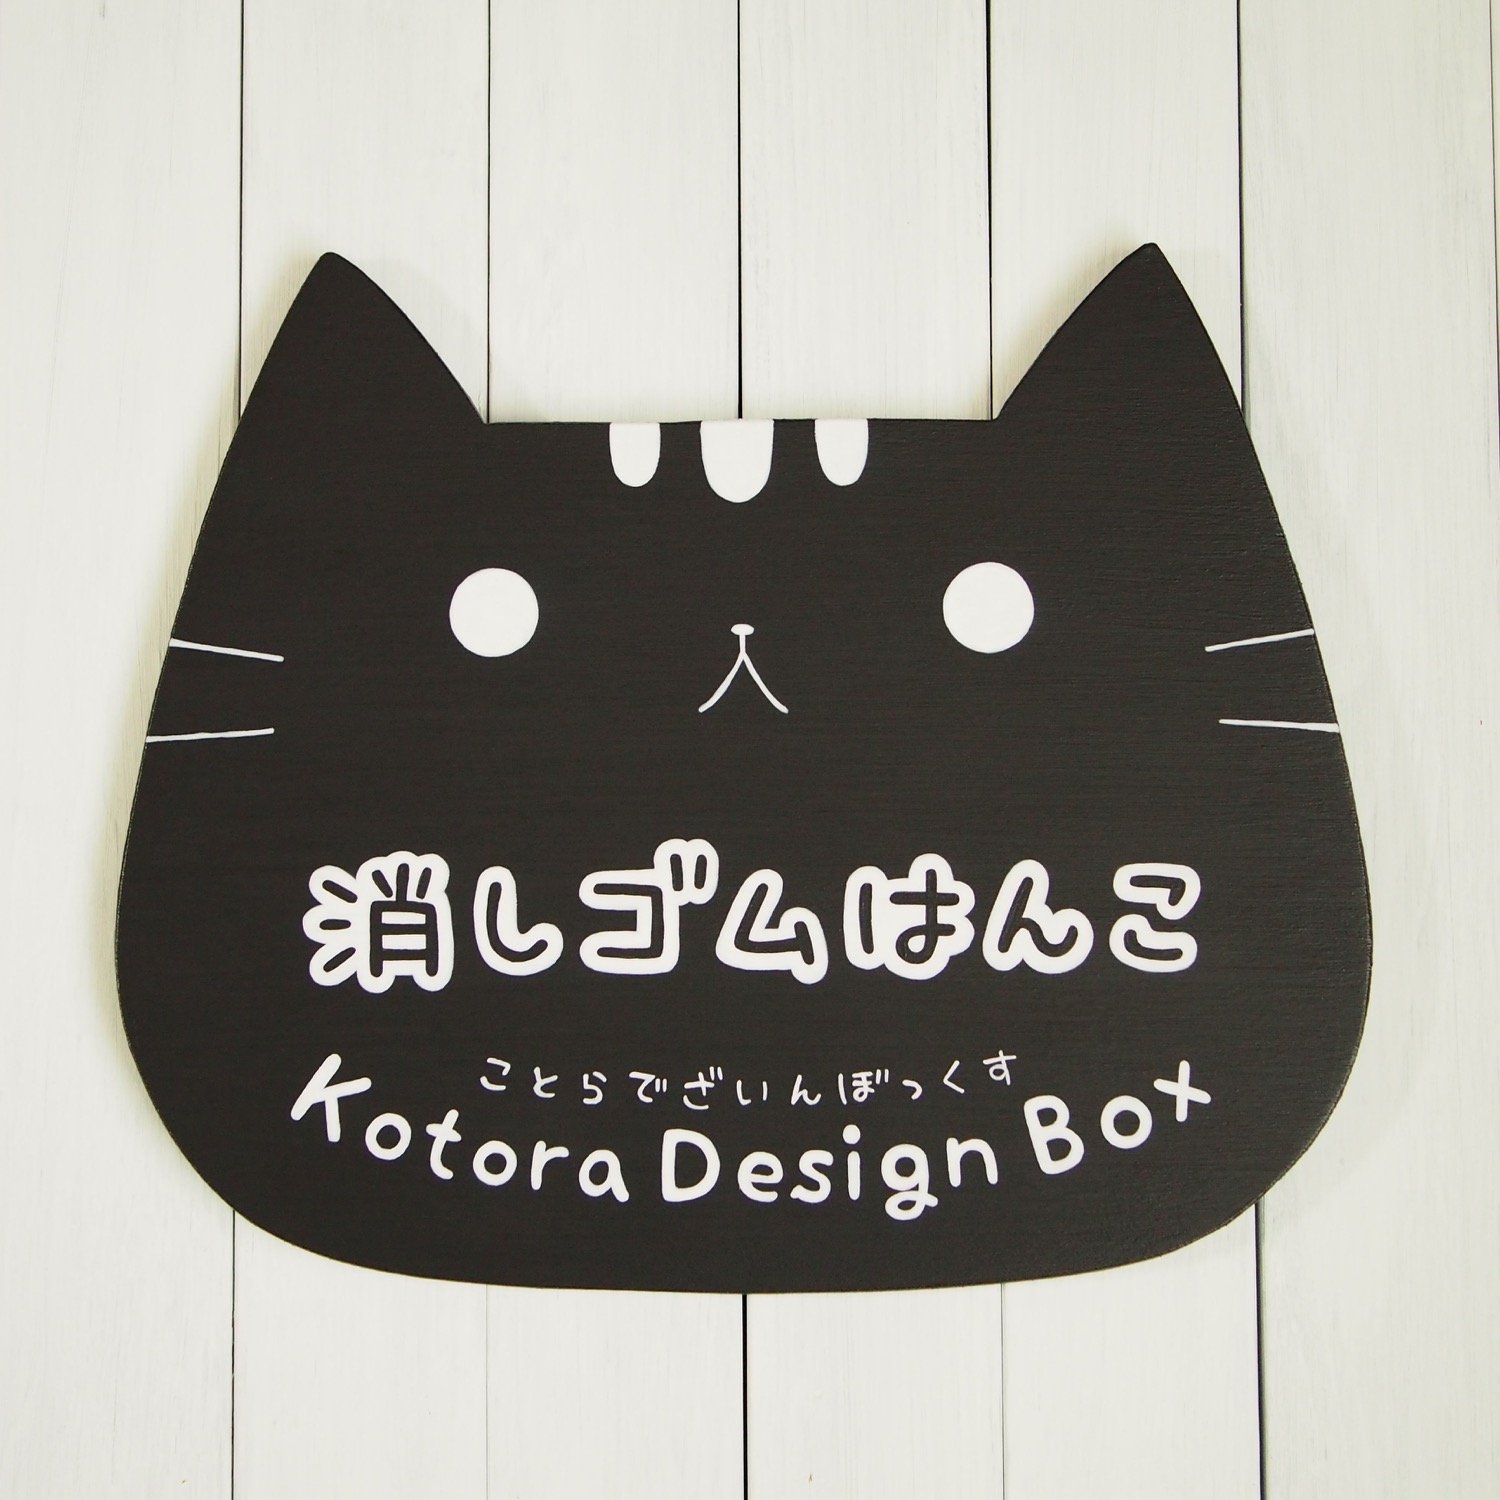 kotora_design Profile Picture